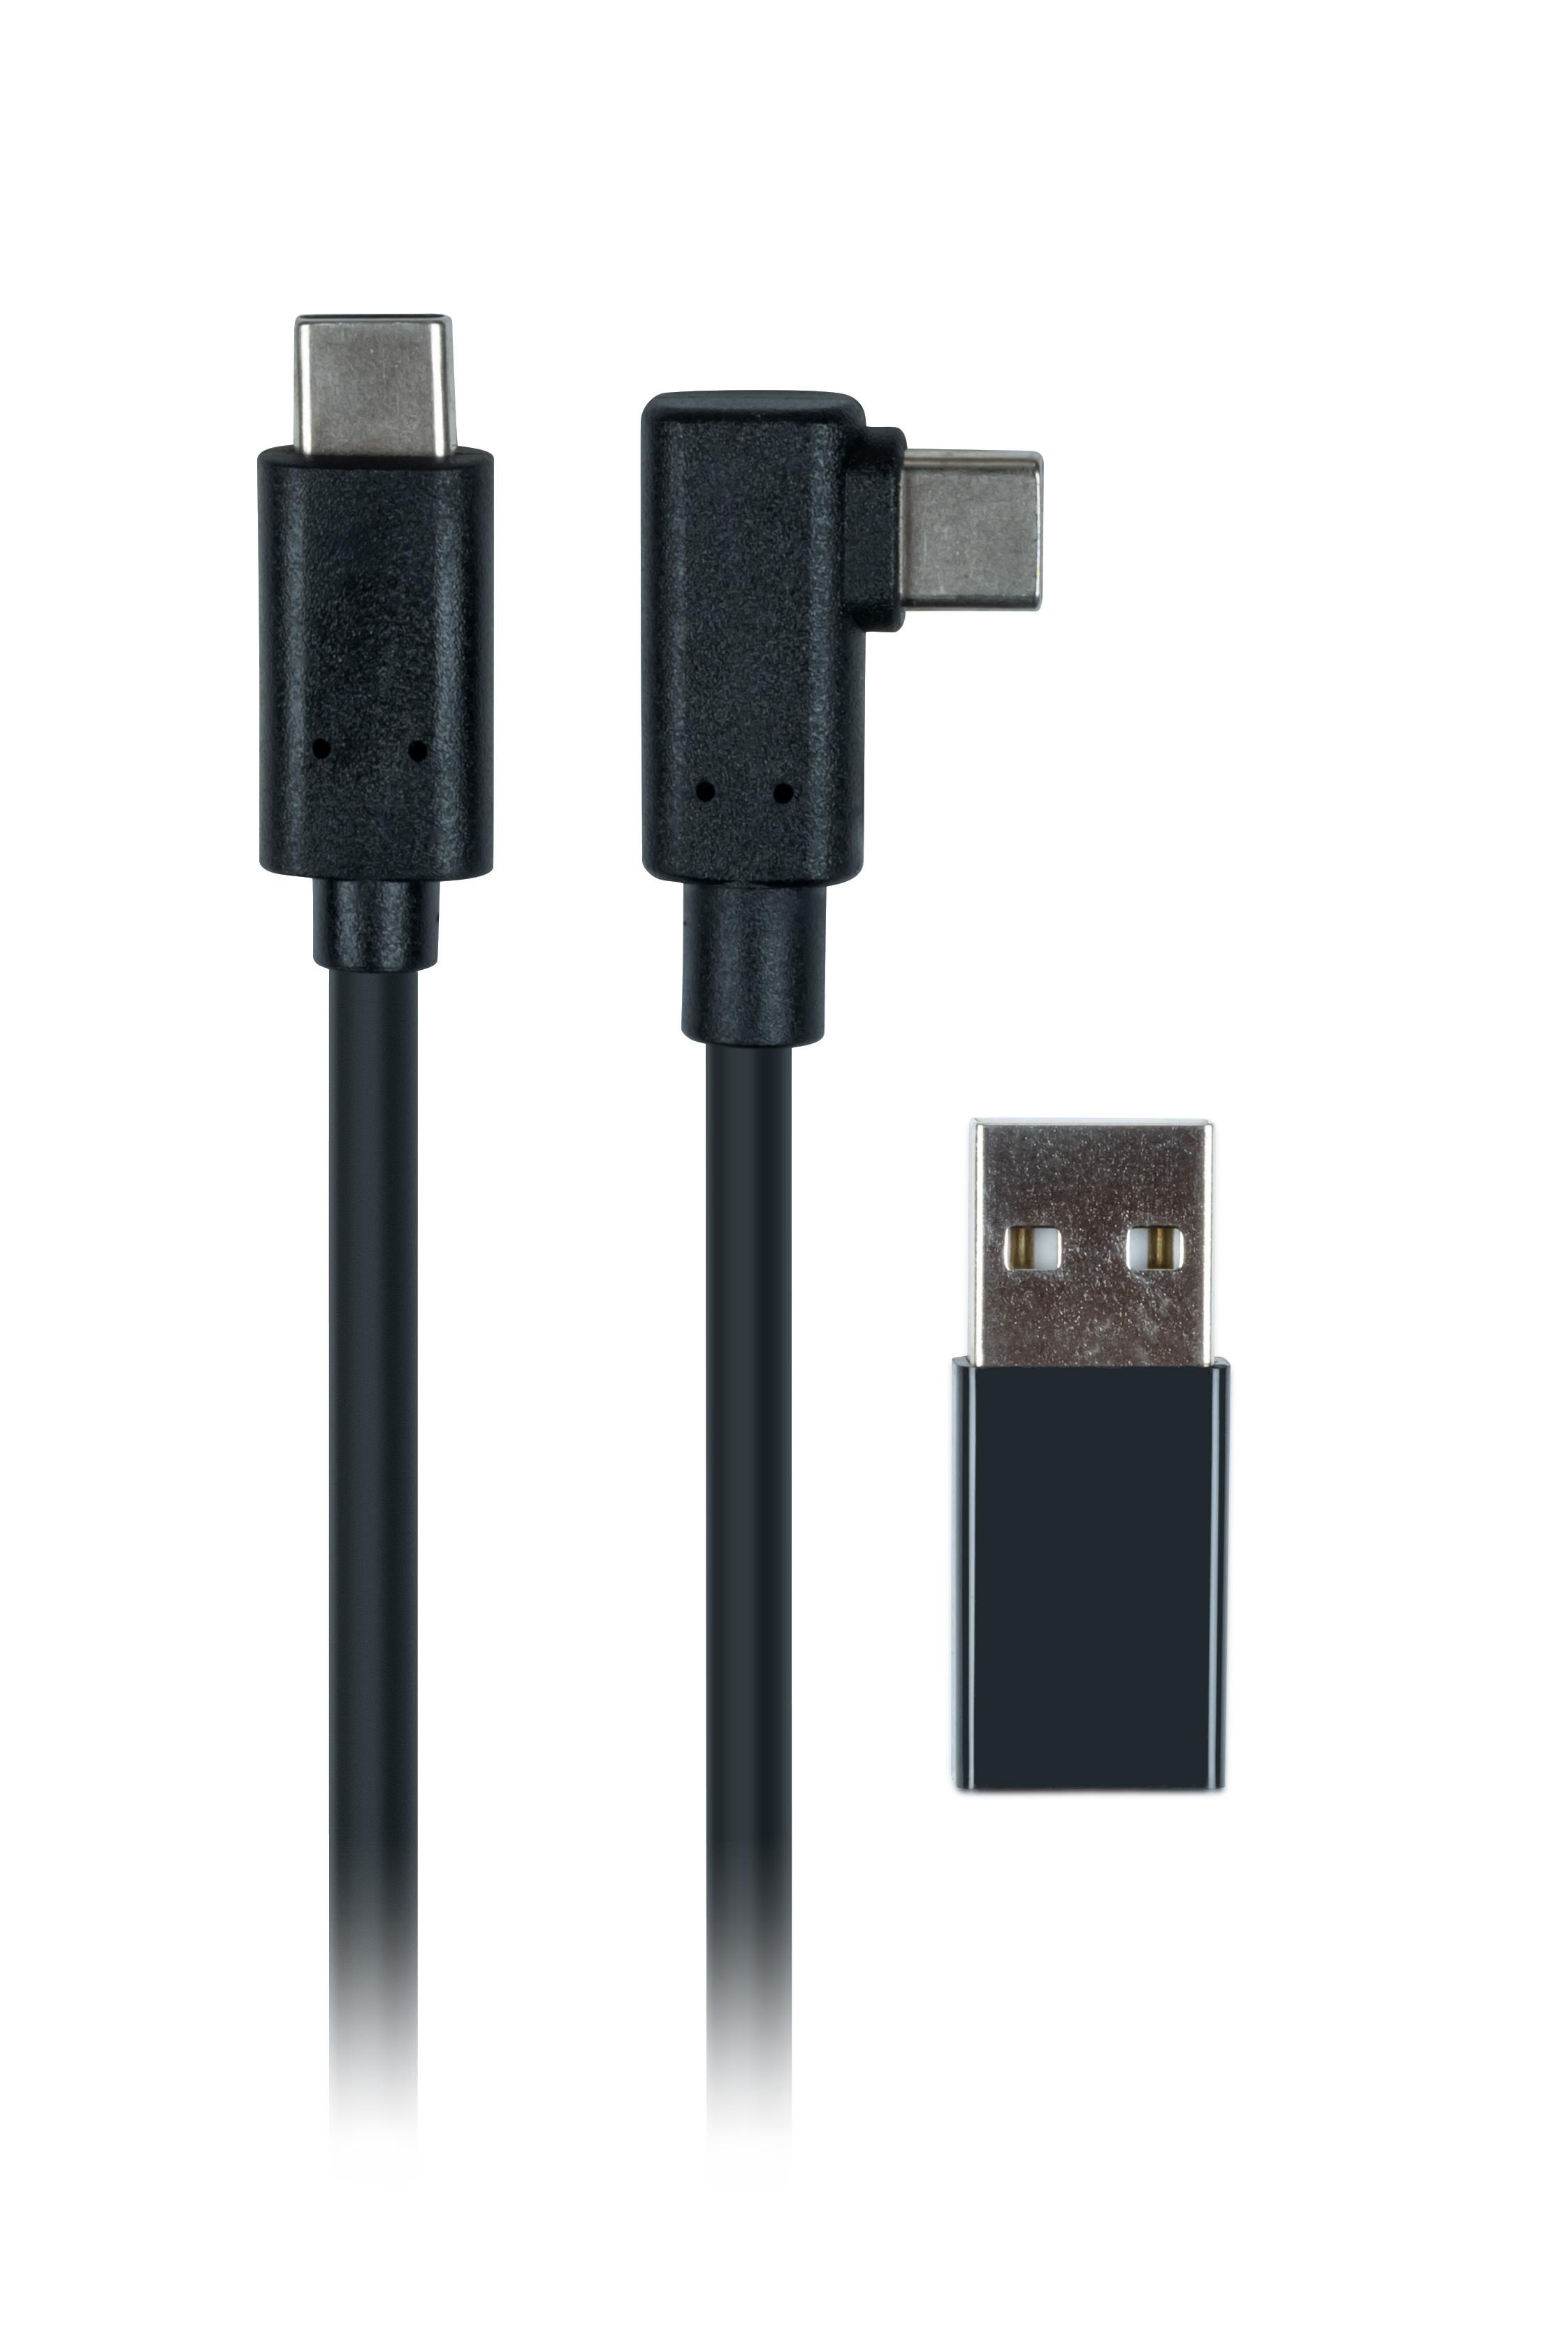 USB-Kabel Zubehör Gaming für Quest2 NACON Meta